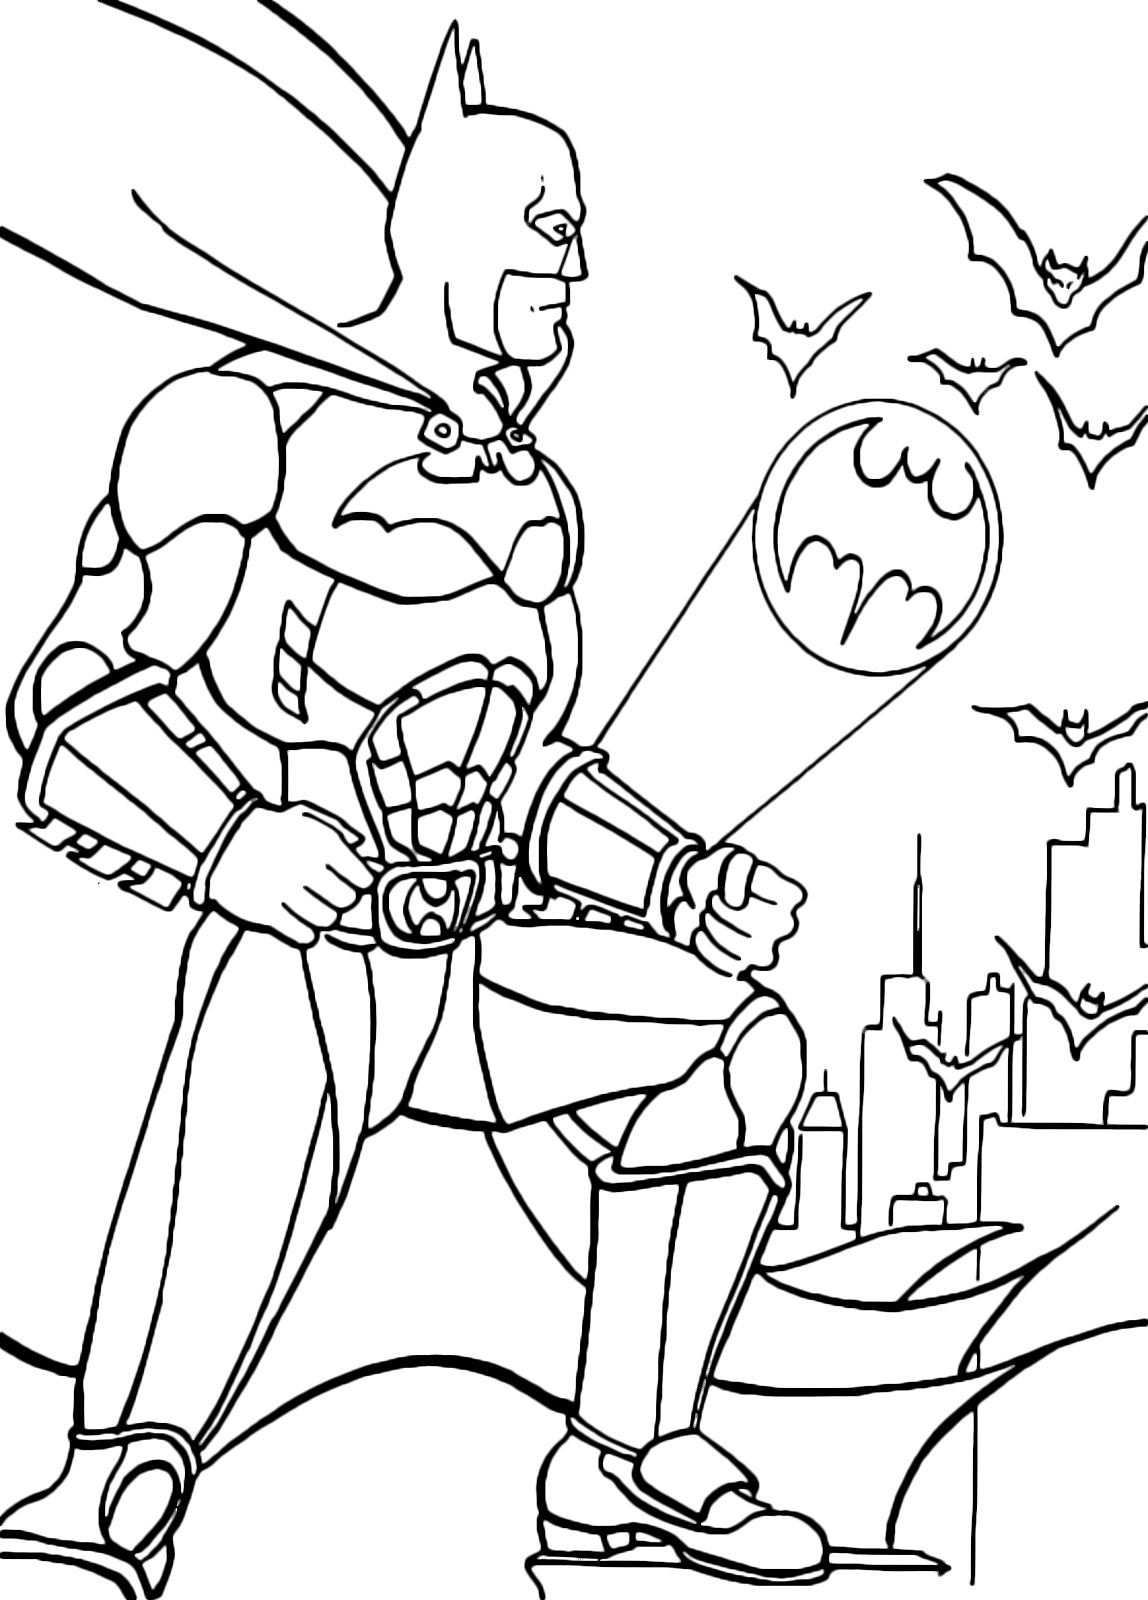 Batman l’ Uomo Pipistrello da colorare